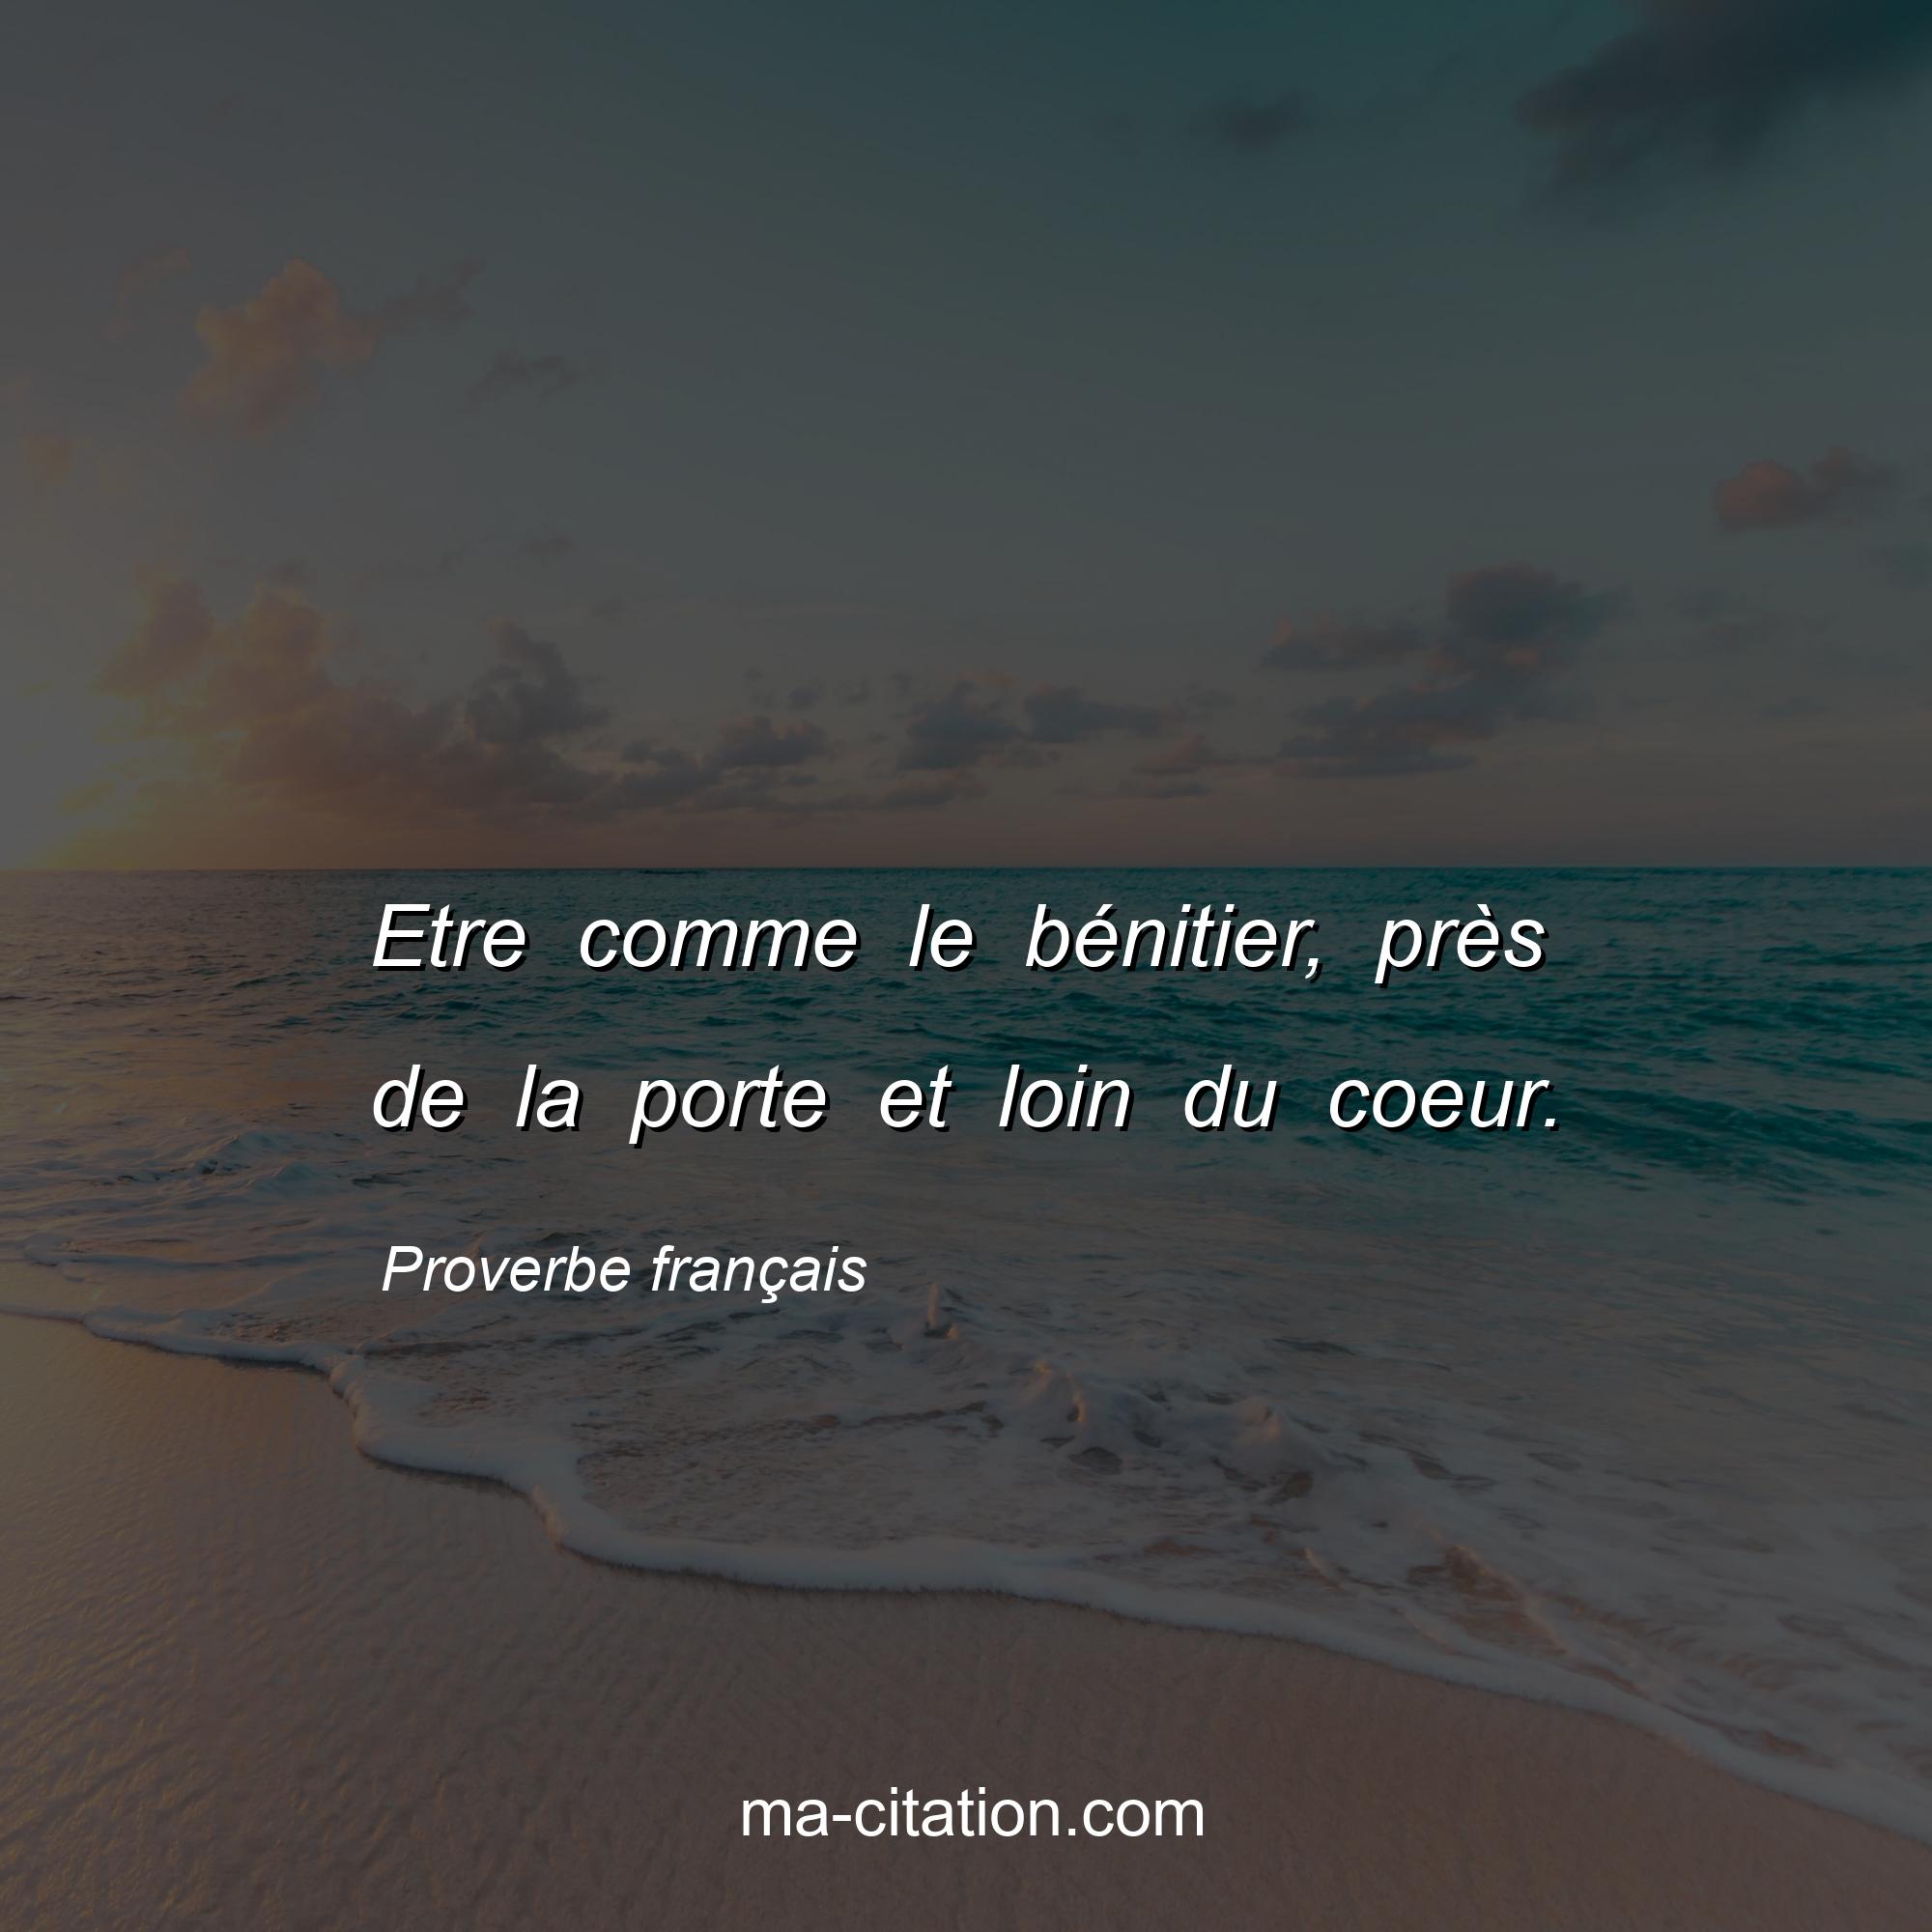 Proverbe français : Etre comme le bénitier, près de la porte et loin du coeur.